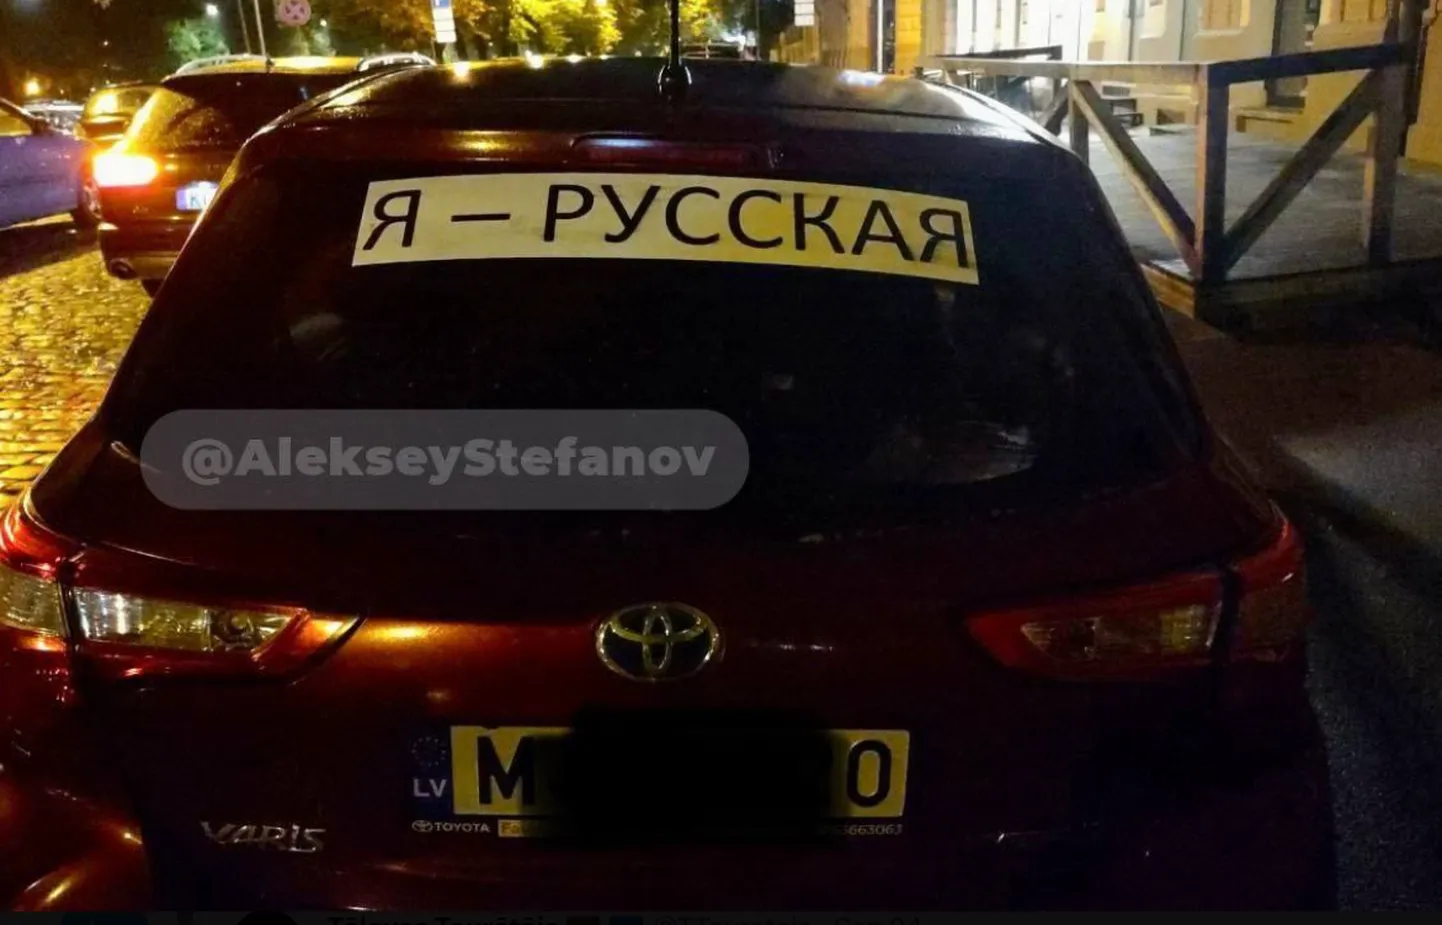 Автомобиль с надписью "Я русская" появились и в Латвии.